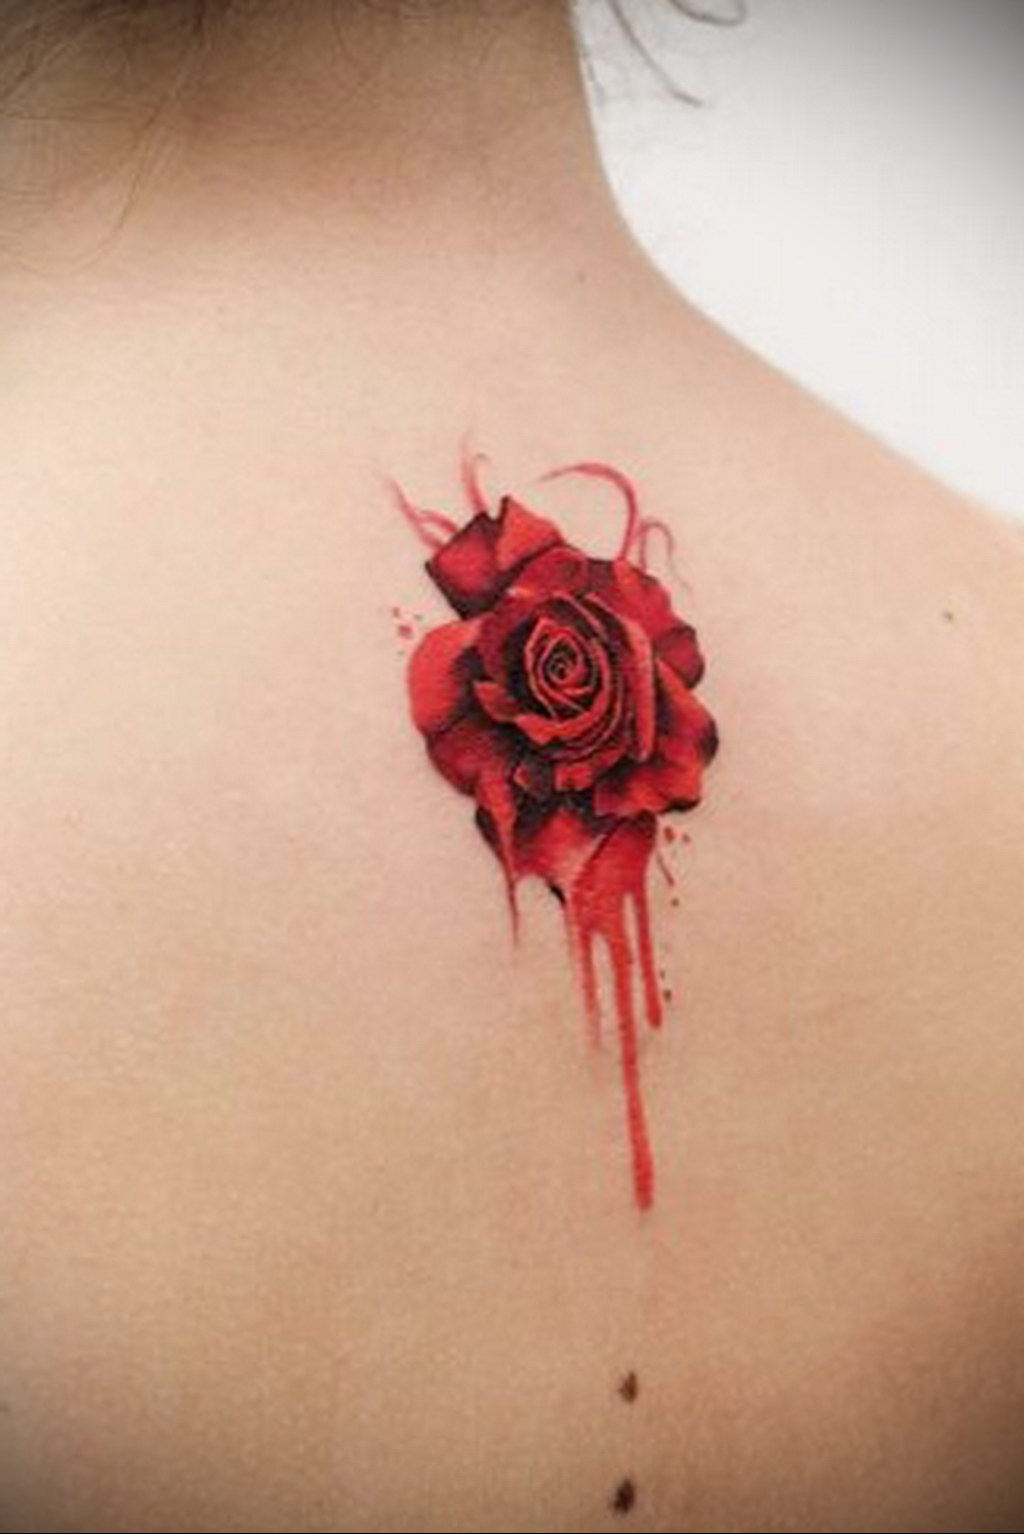 Photo blood rose tattoo 22102019 023  blood rose tattoo   tattoovaluenet  tattoovaluenet